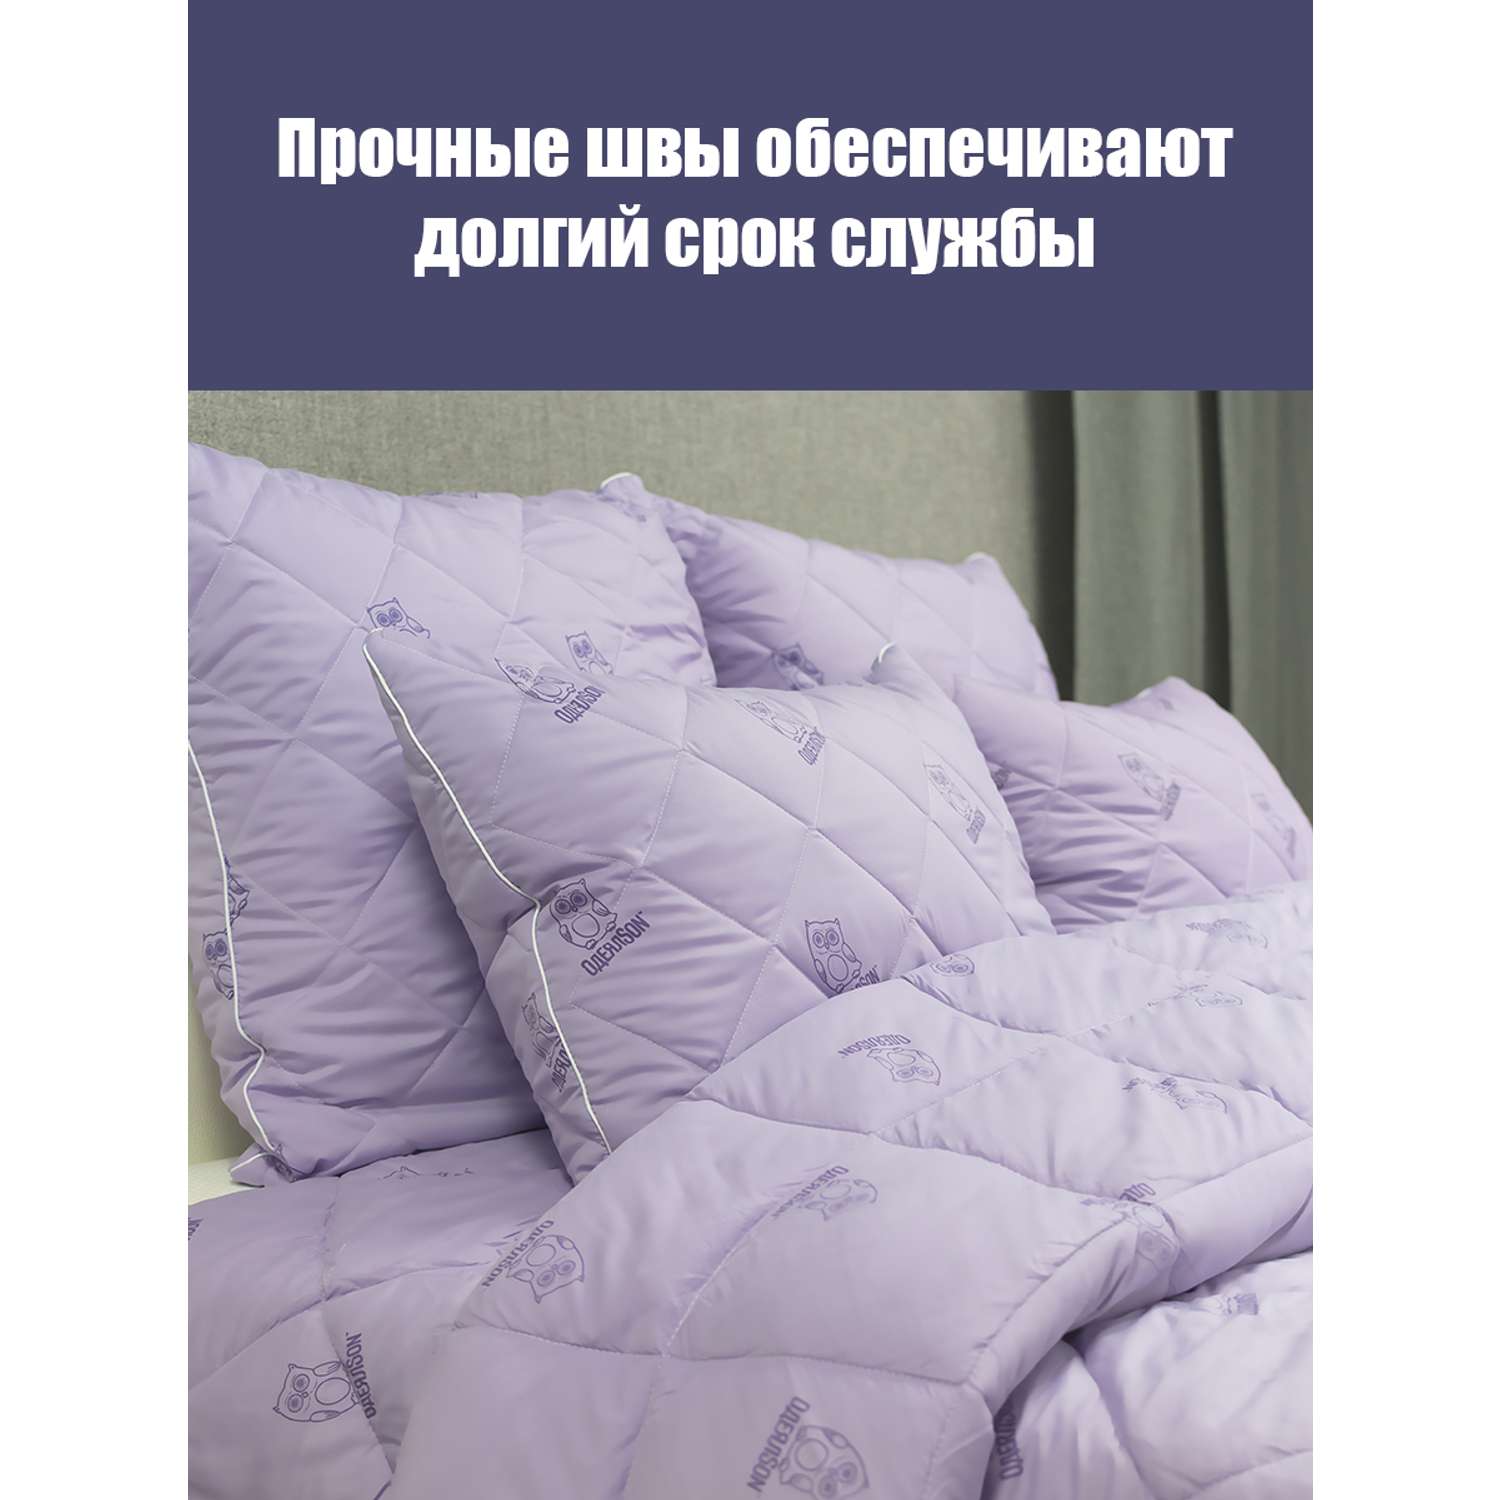 Одеяло Мягкий сон одеялсон 140x205 см - фото 2